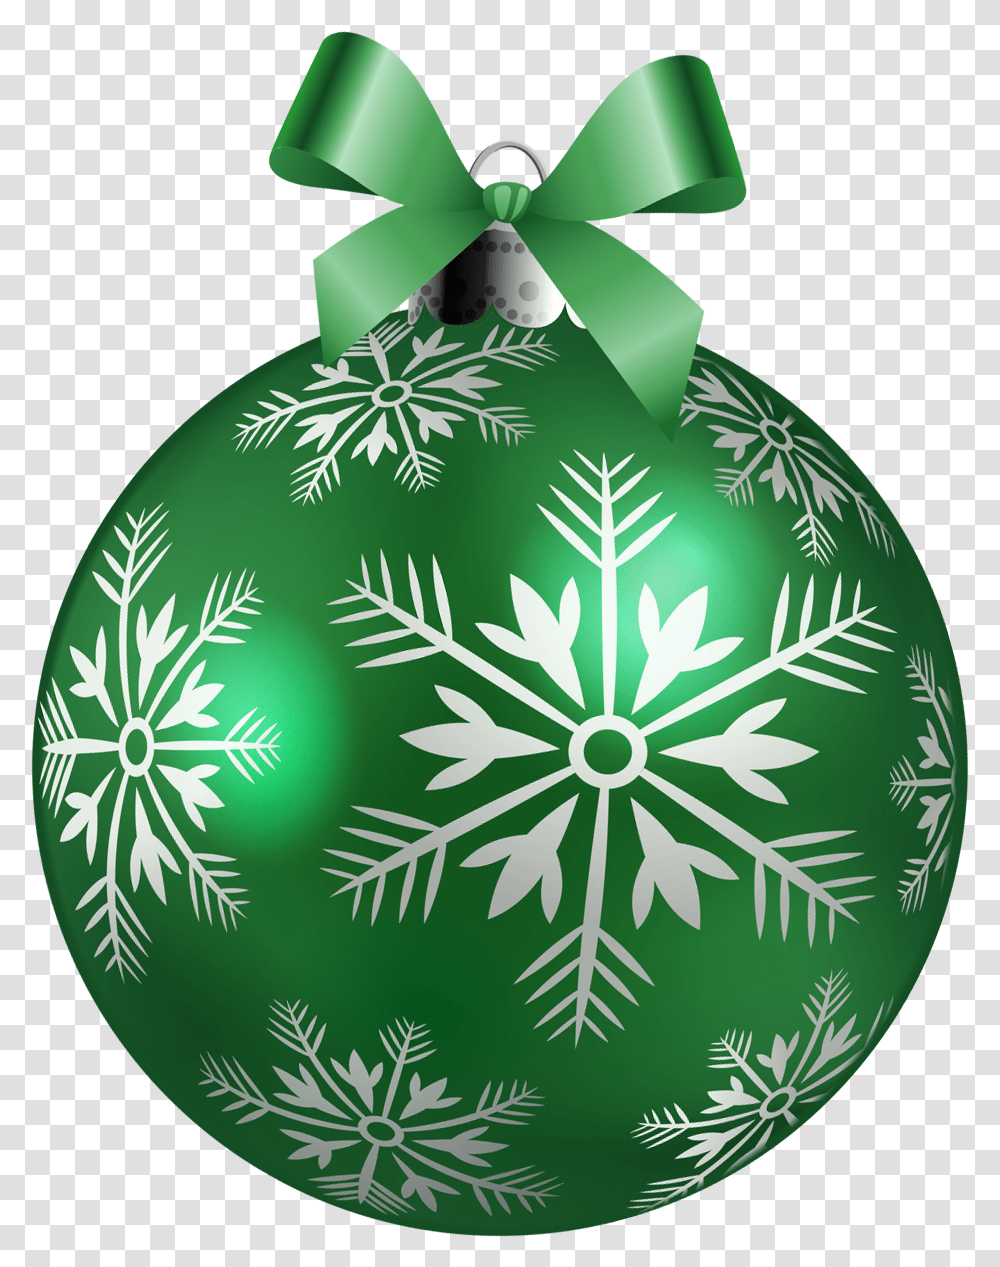 Green Christmas Balls Clipart, Ornament, Egg, Food, Plant Transparent Png